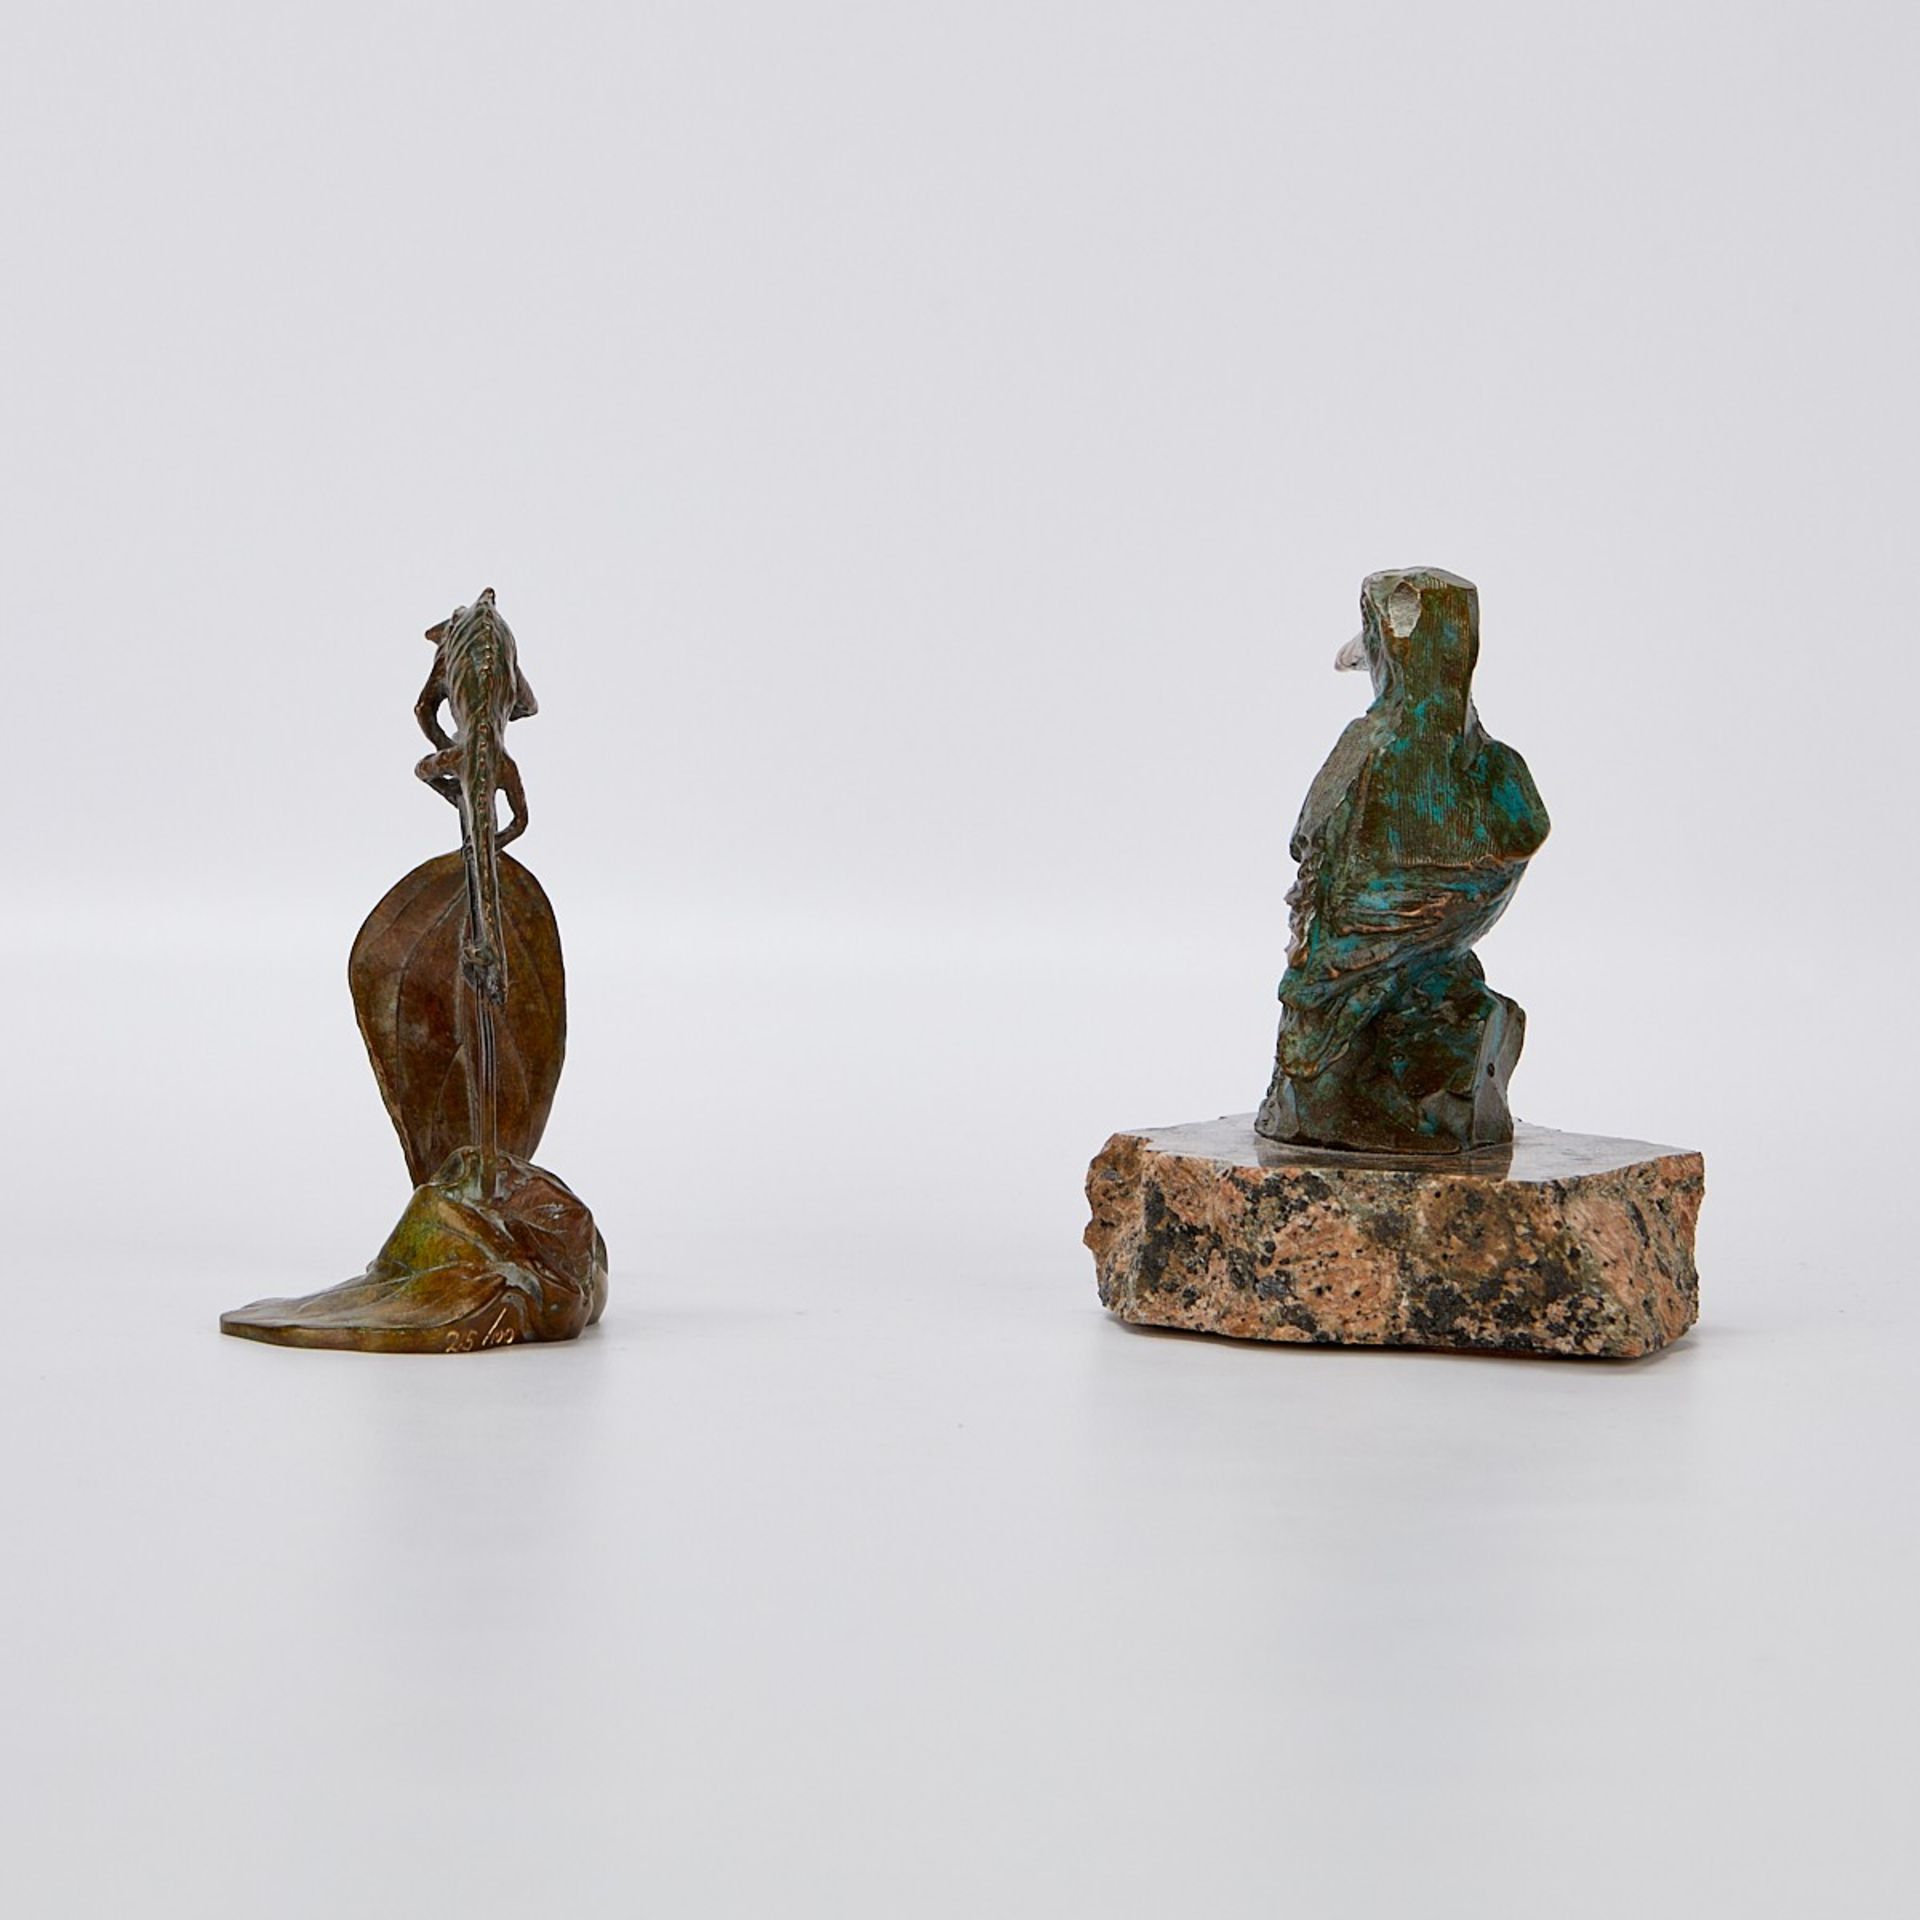 2 Bronze Sculptures - Bird & Chameleon - Image 5 of 13